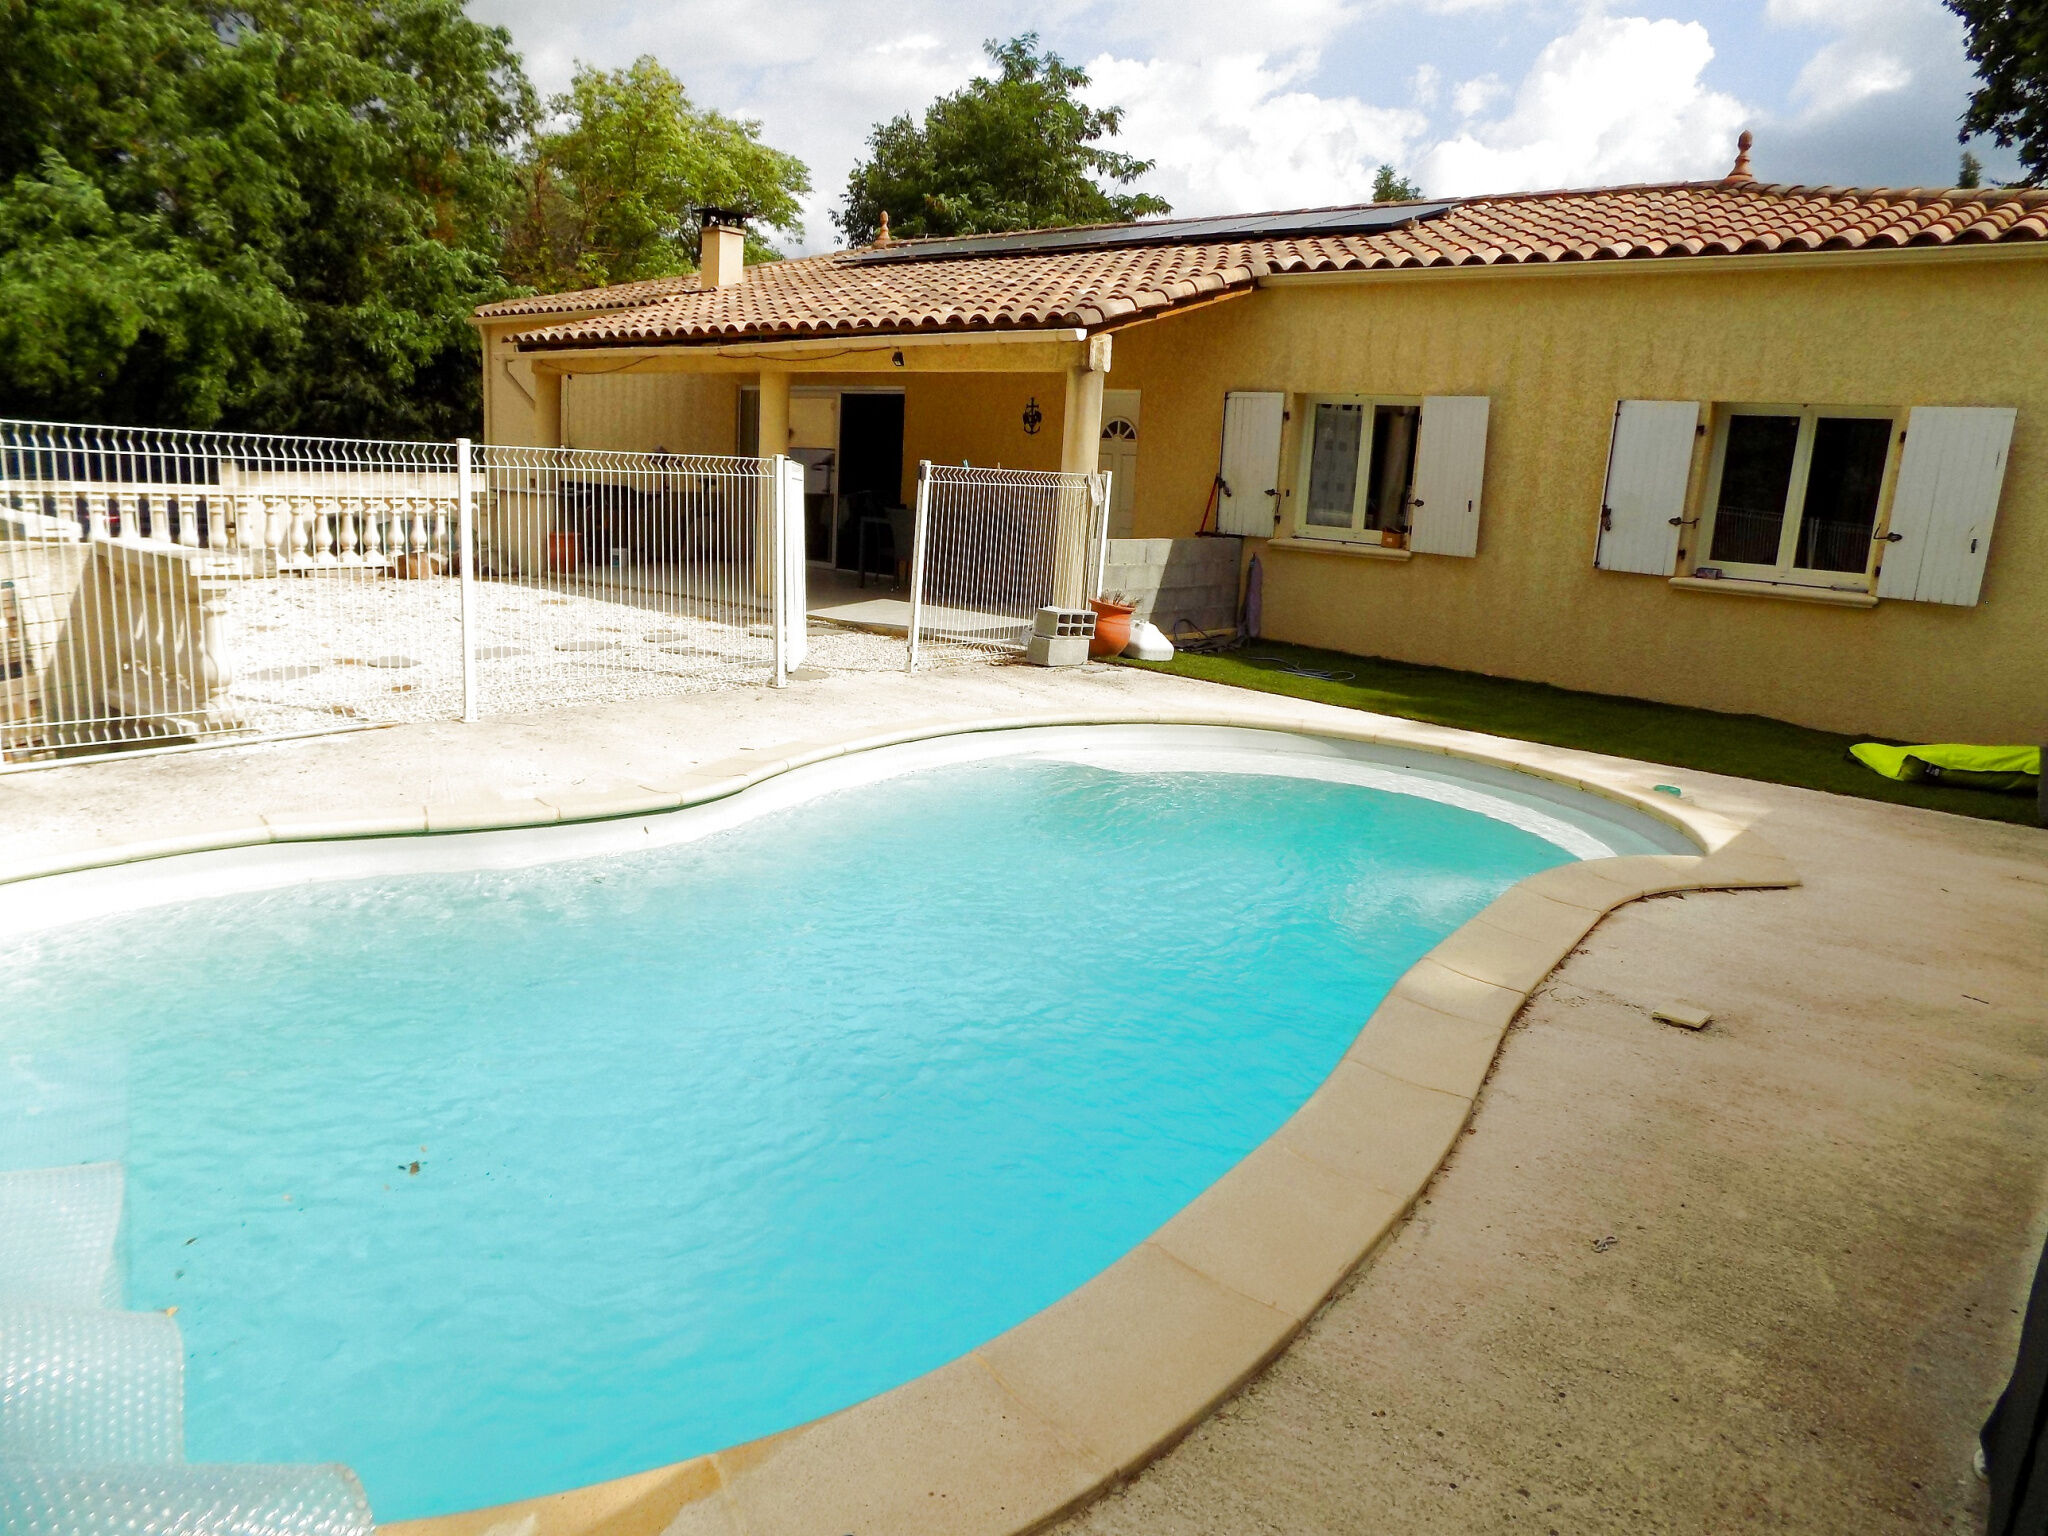 Vente Villa 125 m² à Mauressargues 339 000 €